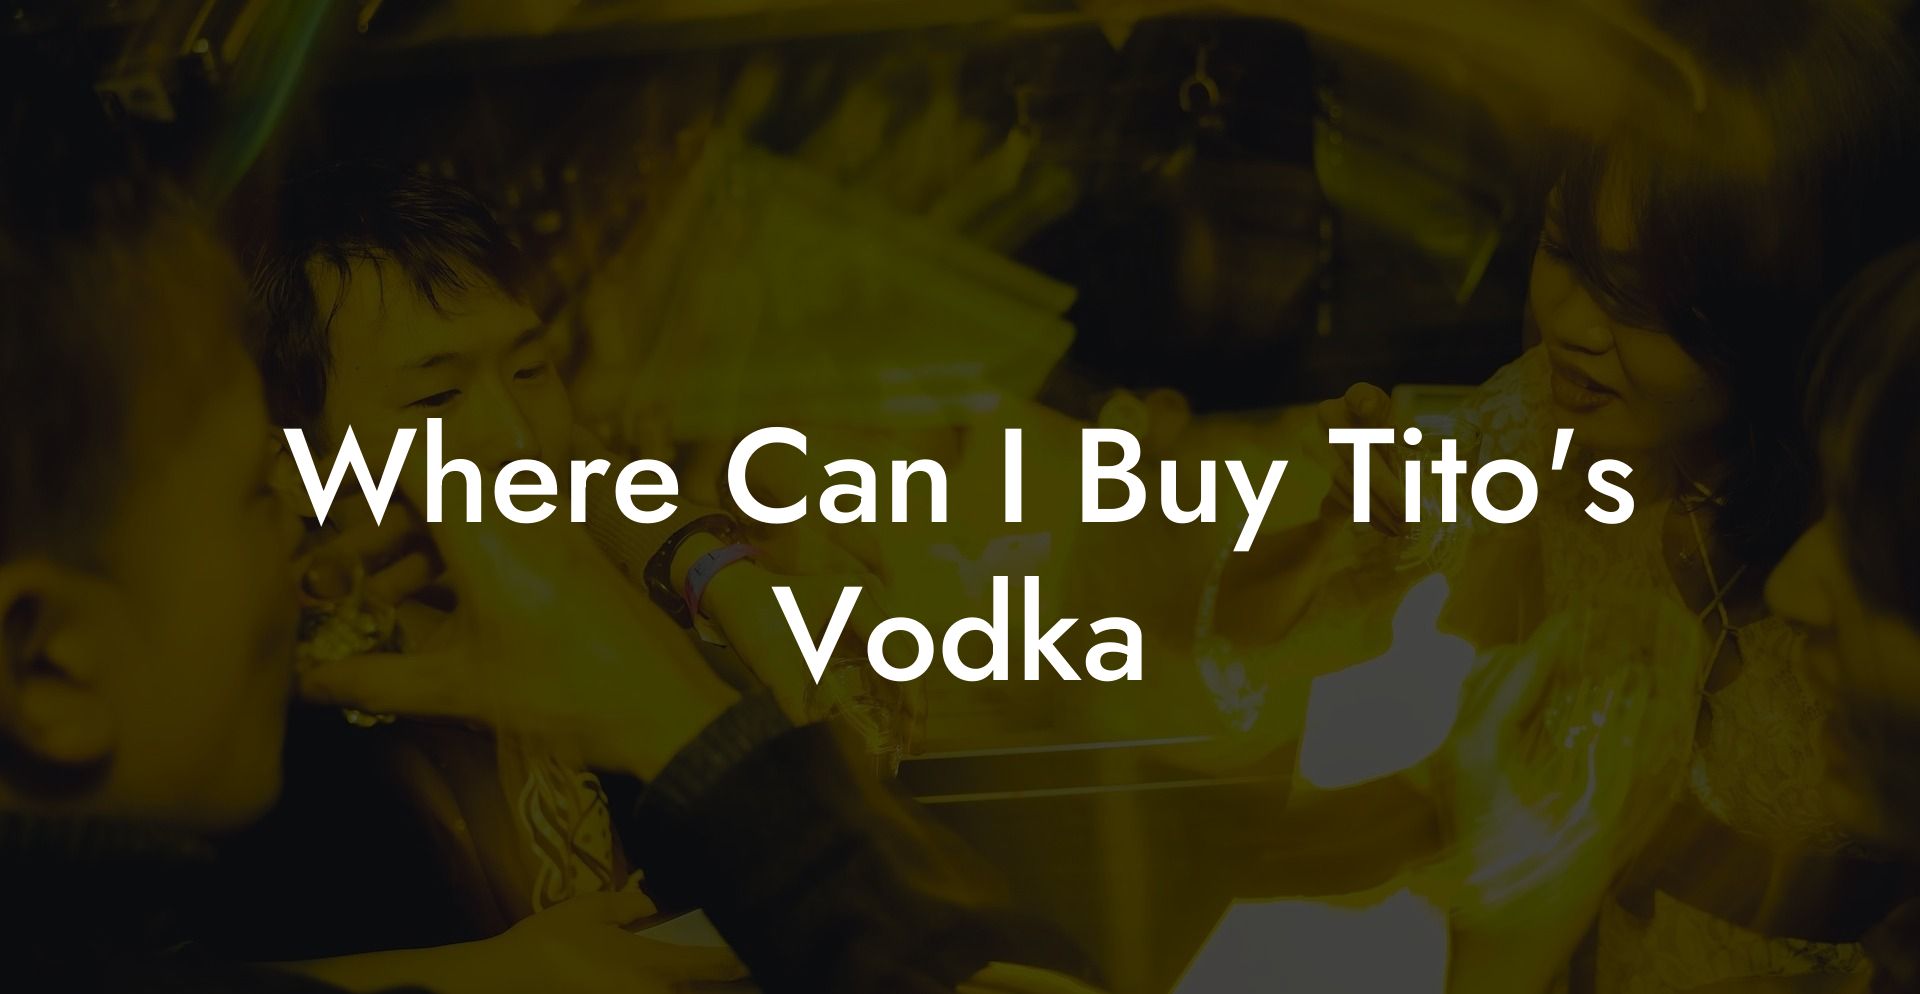 Where Can I Buy Tito's Vodka